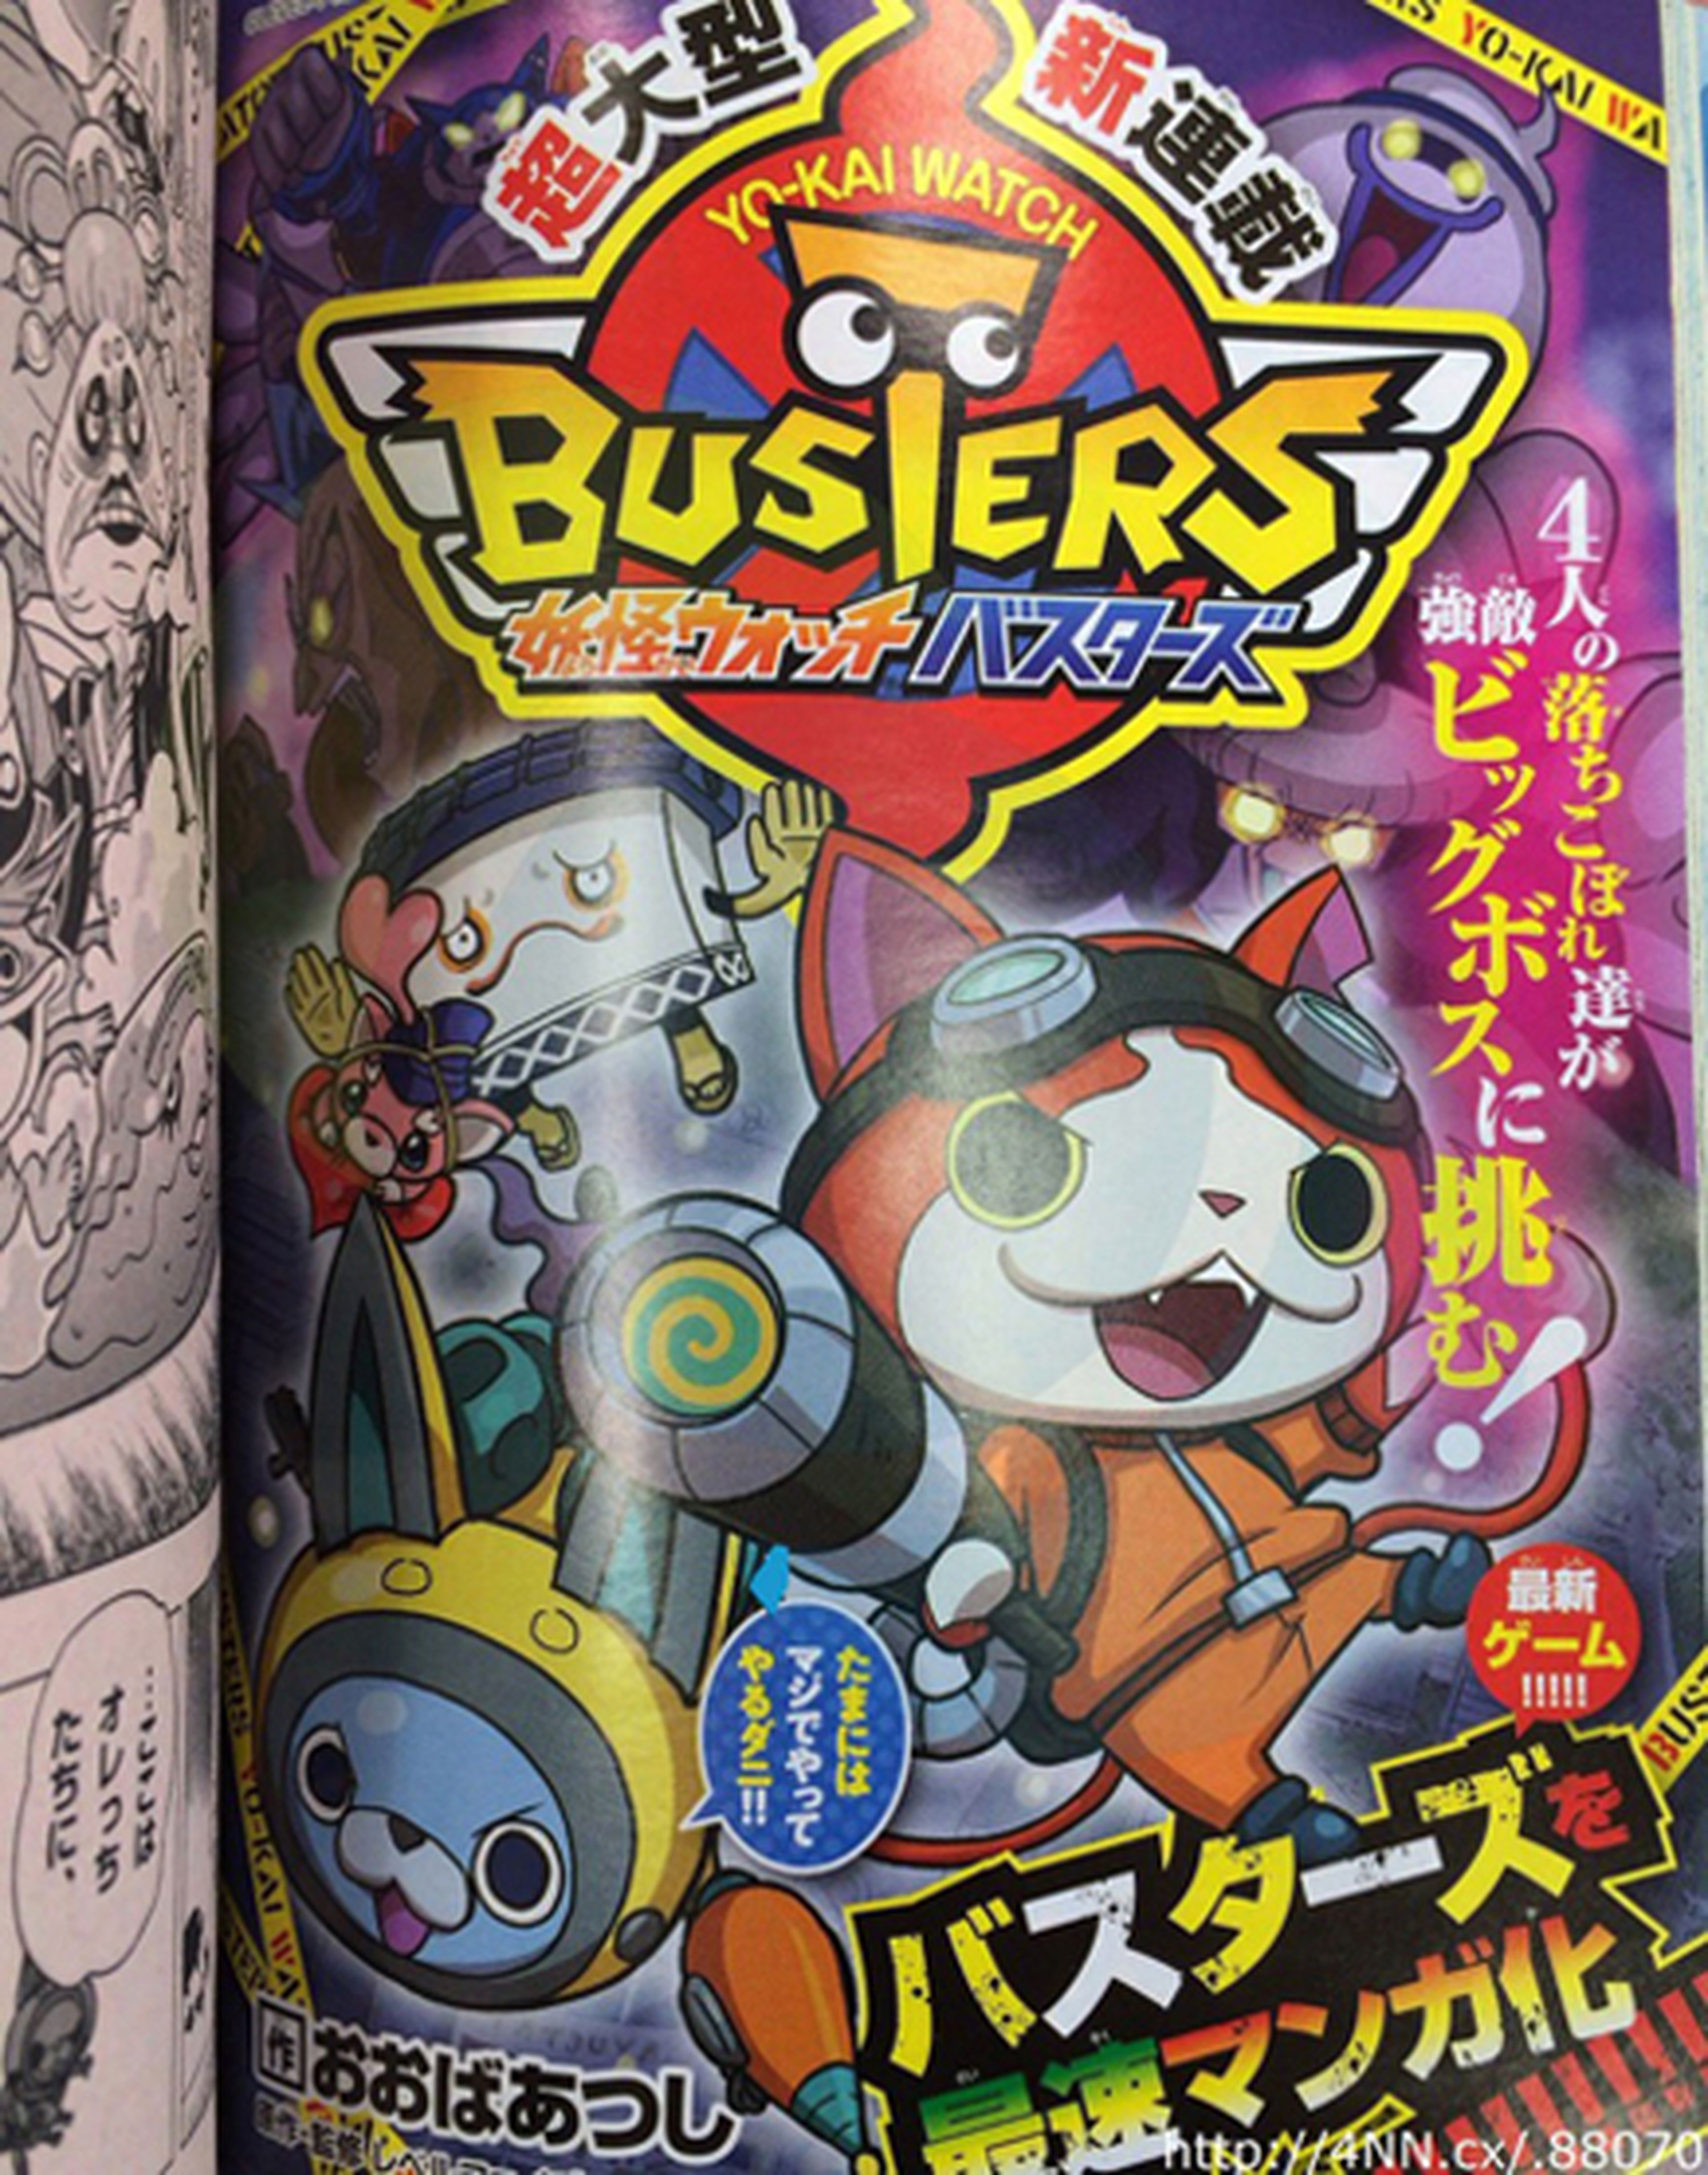 Yōkai Watch Busters tendrá manga